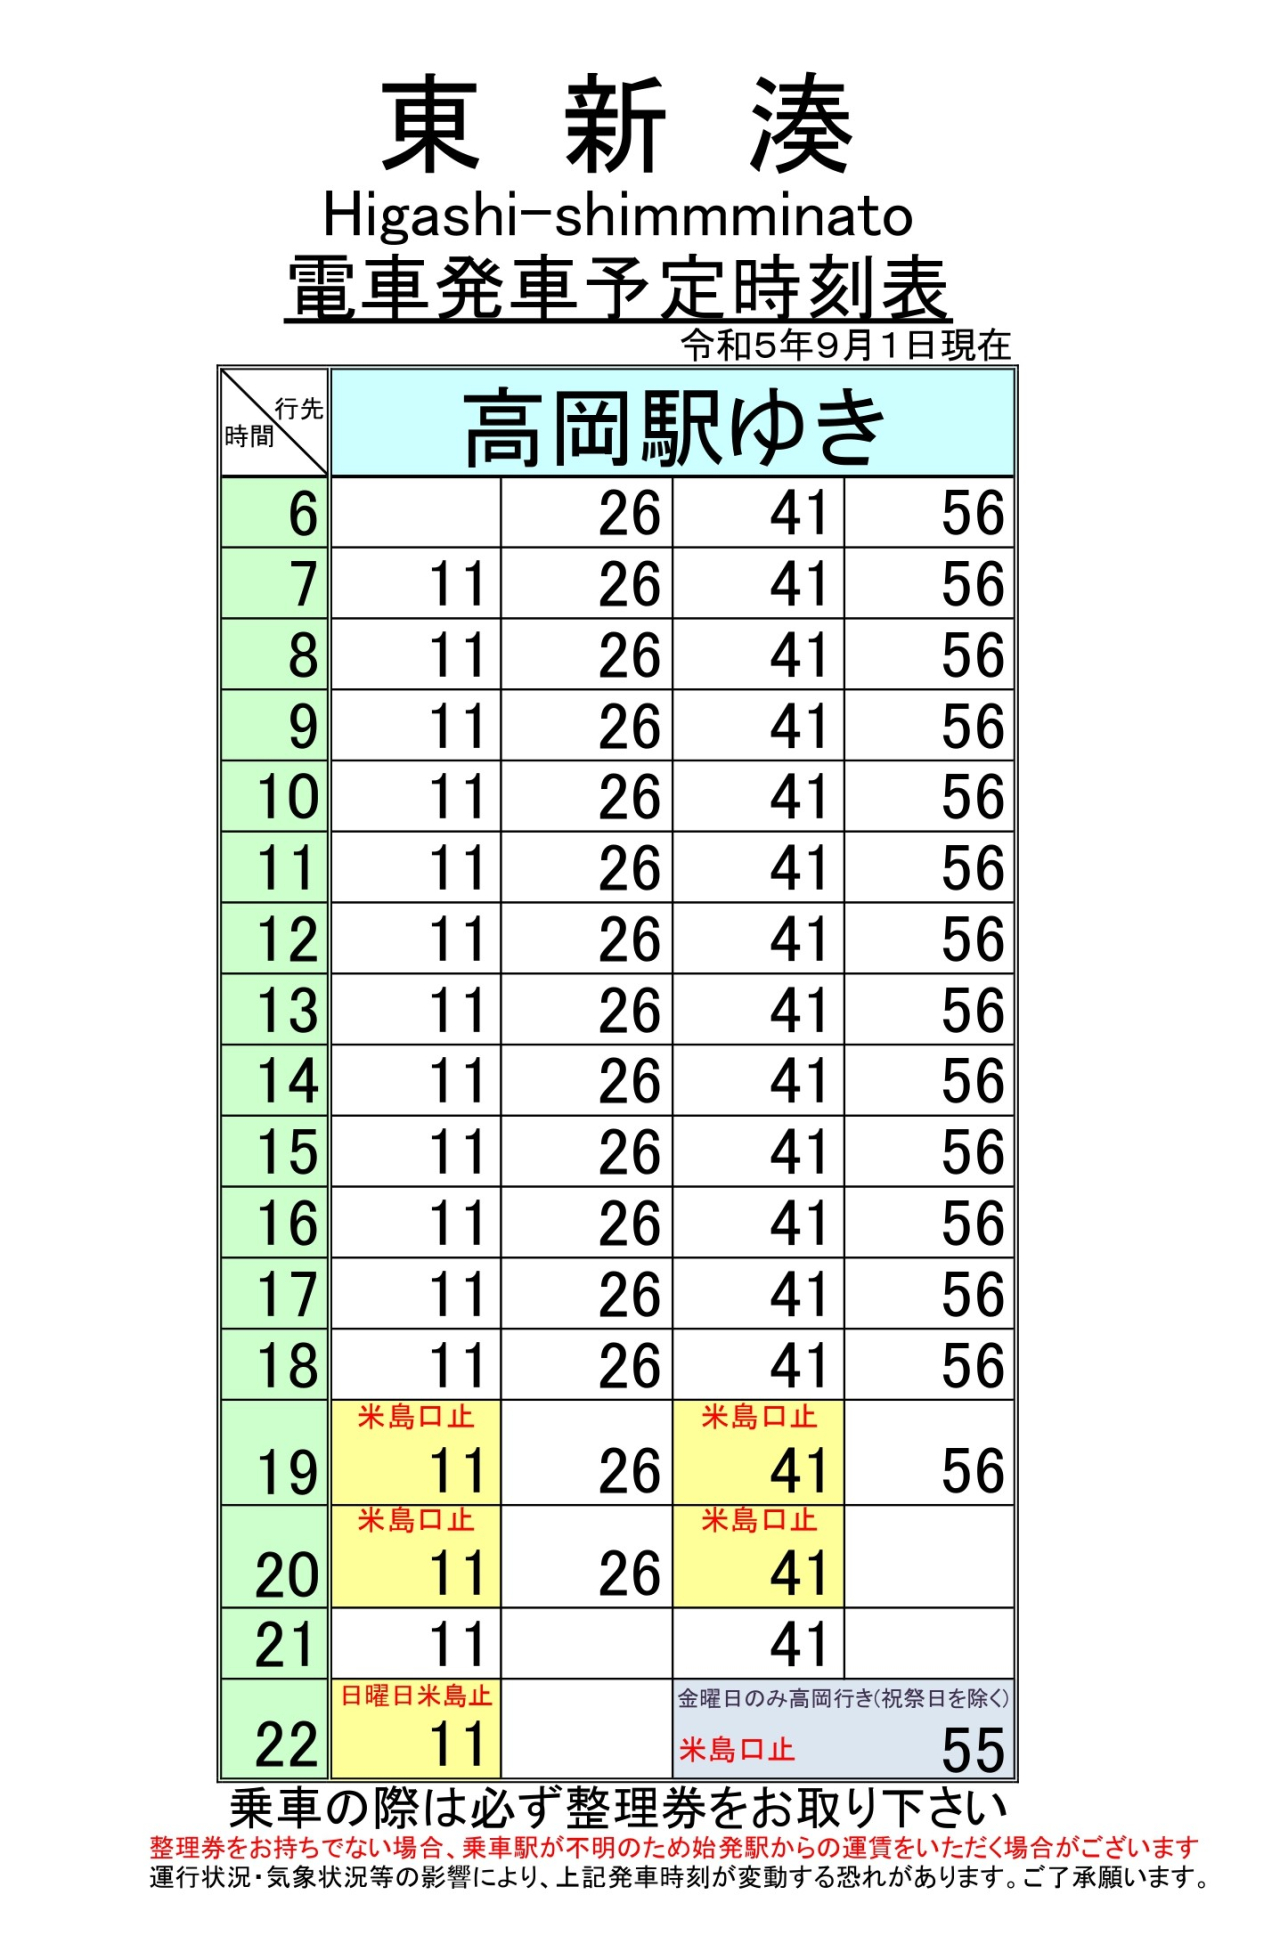 最新5.5.1改正各駅時刻表(東新湊上り)_page-0001